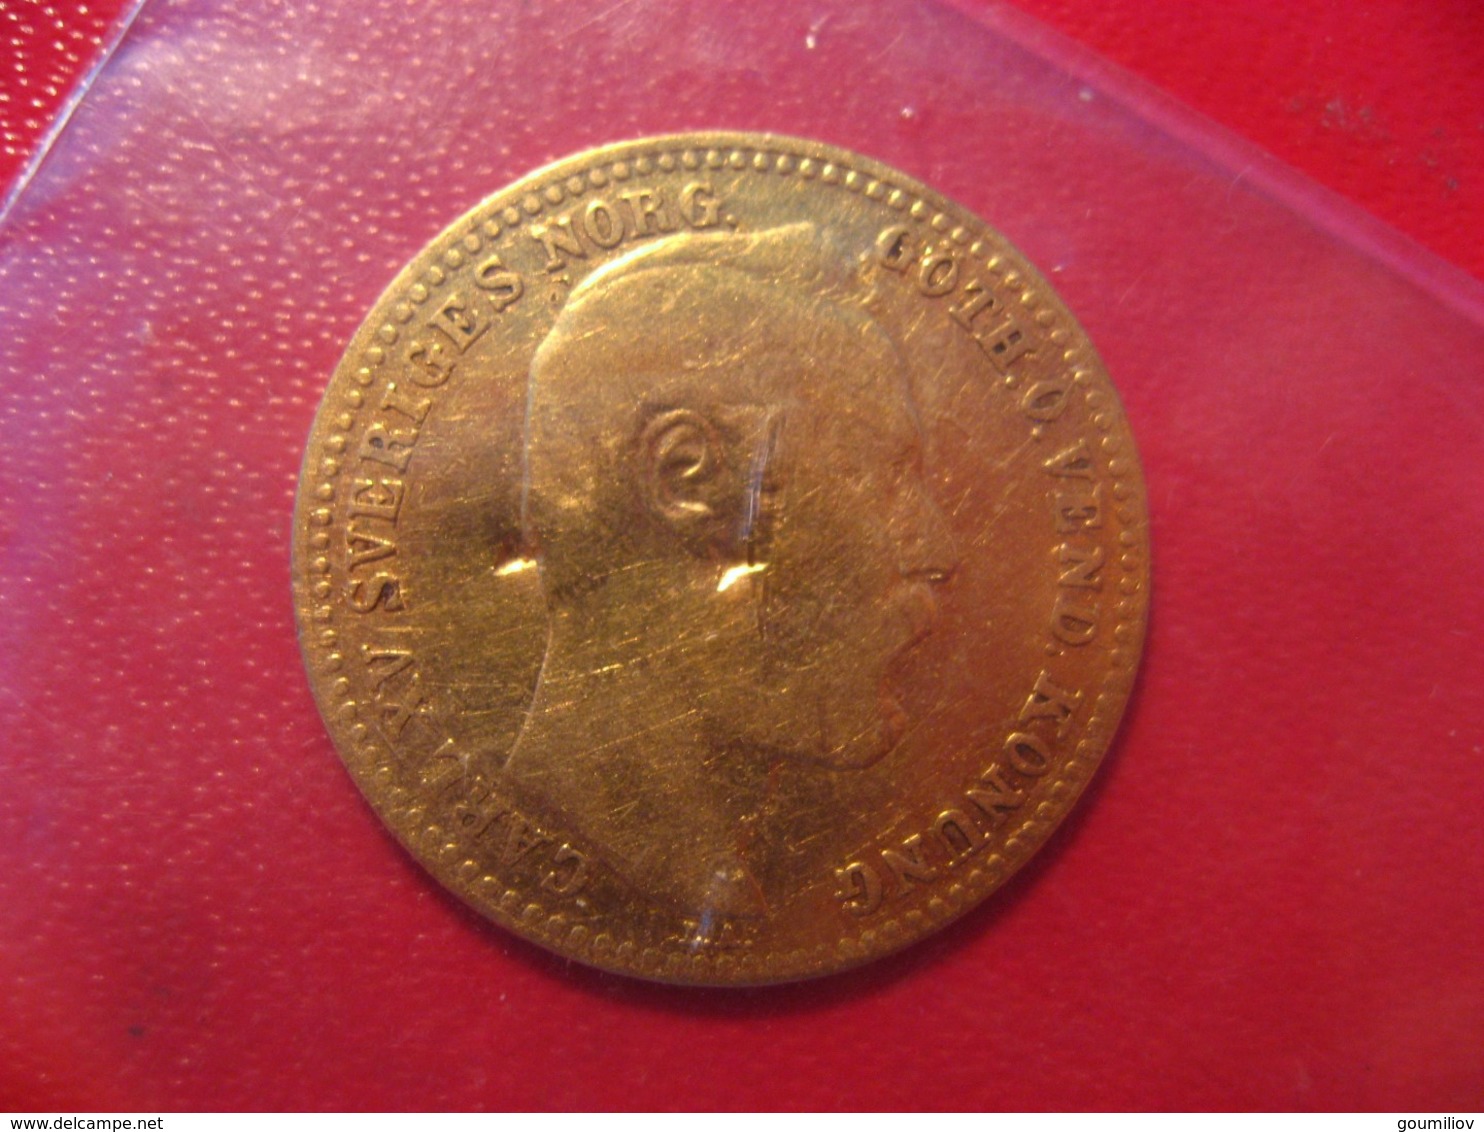 France/Suéde - Carolin 1869 - 10 Francs - Monnaie Commemorative Pour La Venue De Carl XV En France - 10 Francs (or)